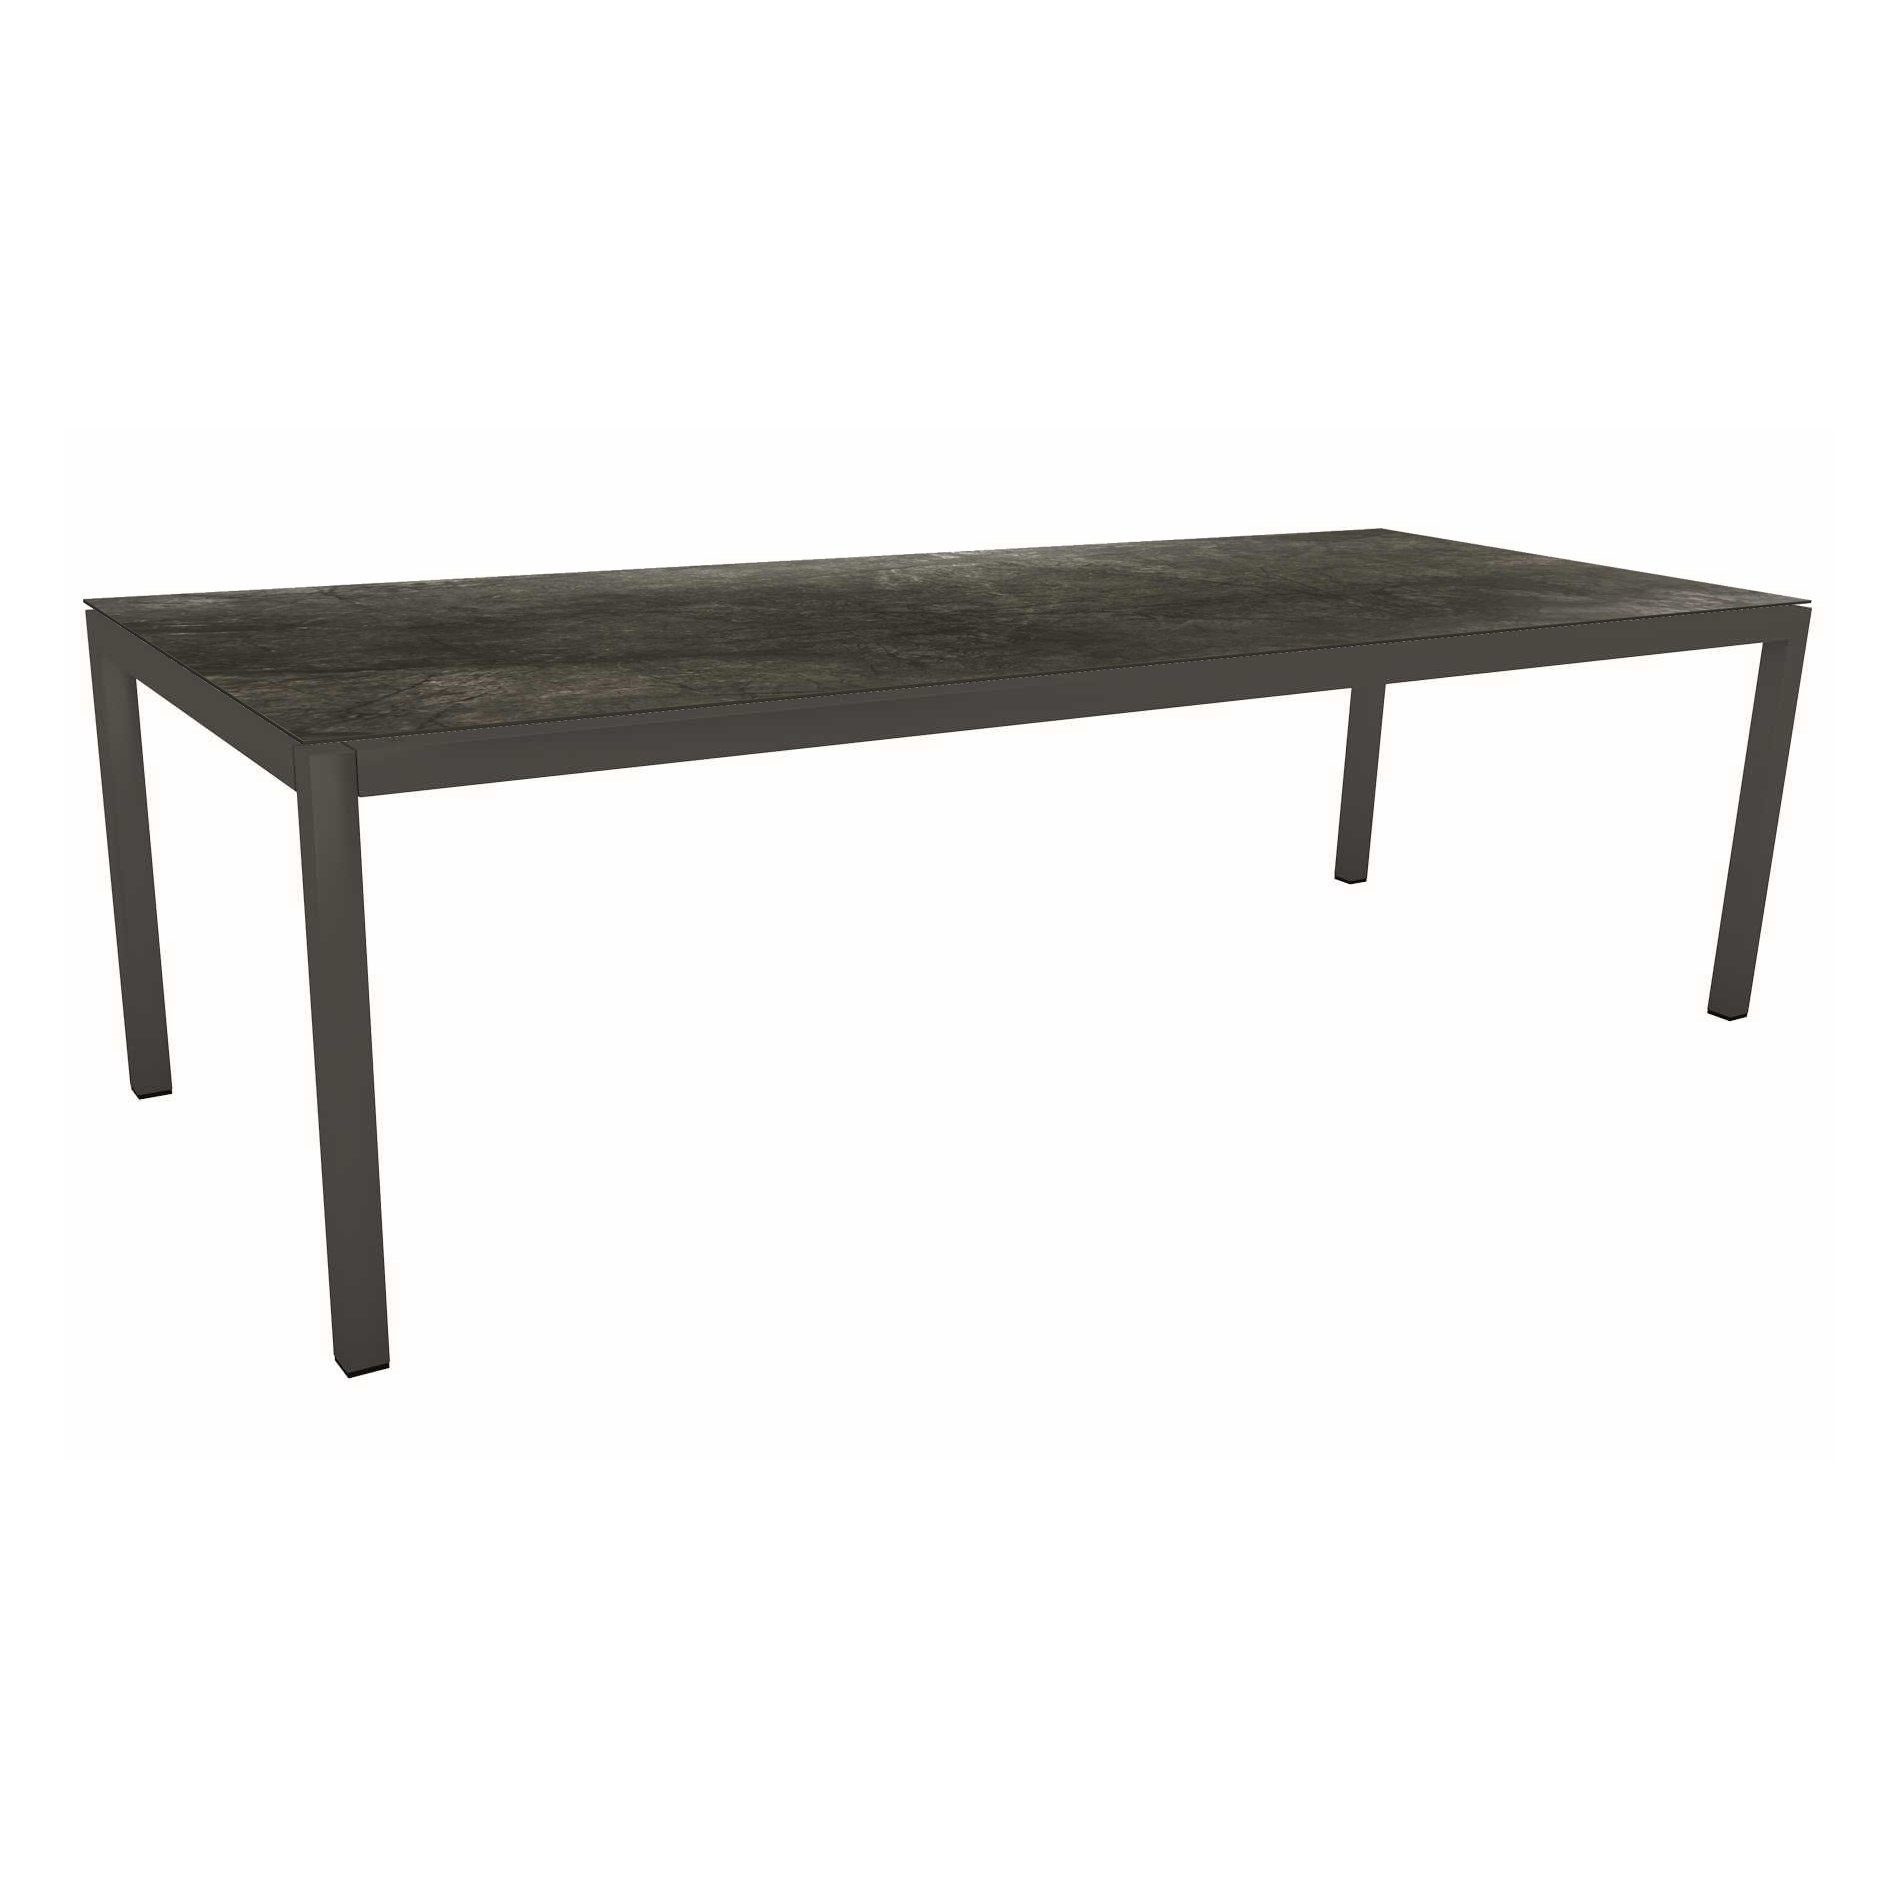 Stern Tischsystem Gartentisch, Gestell Aluminium anthrazit, Tischplatte HPL Dark Marble, Maße: 250x100 cm